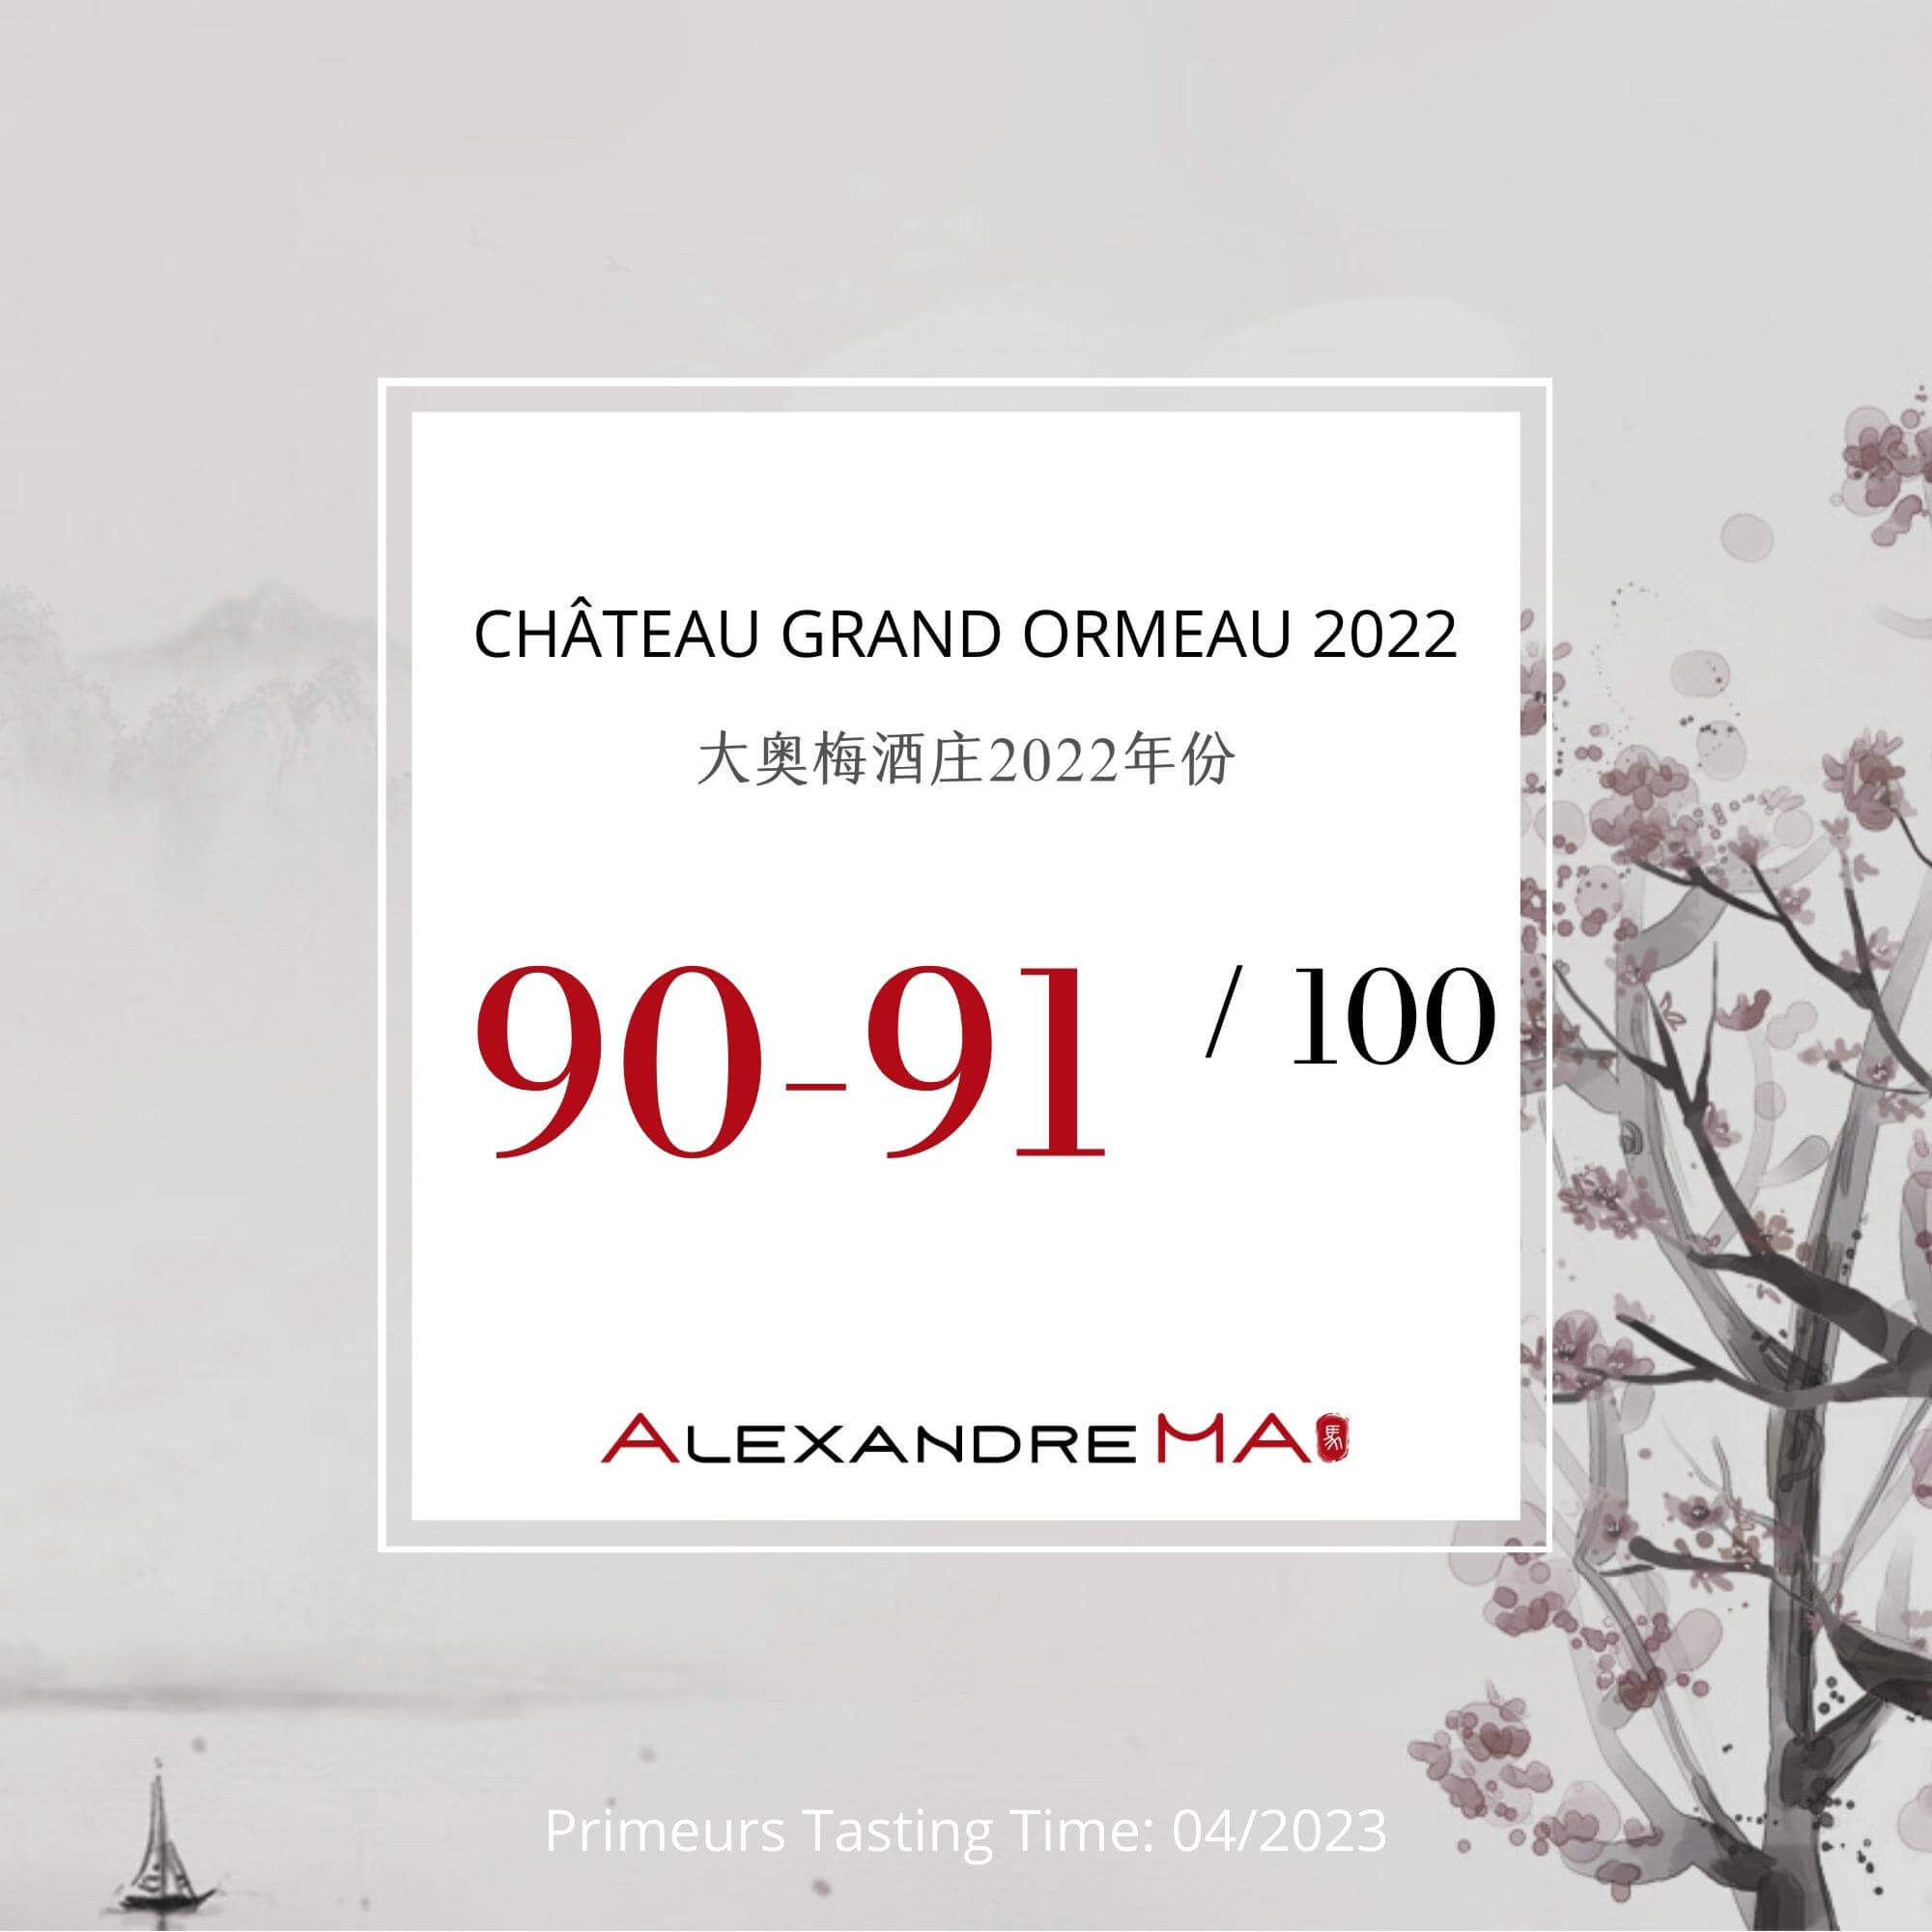 Château Grand Ormeau 2022 Primeurs - Alexandre MA